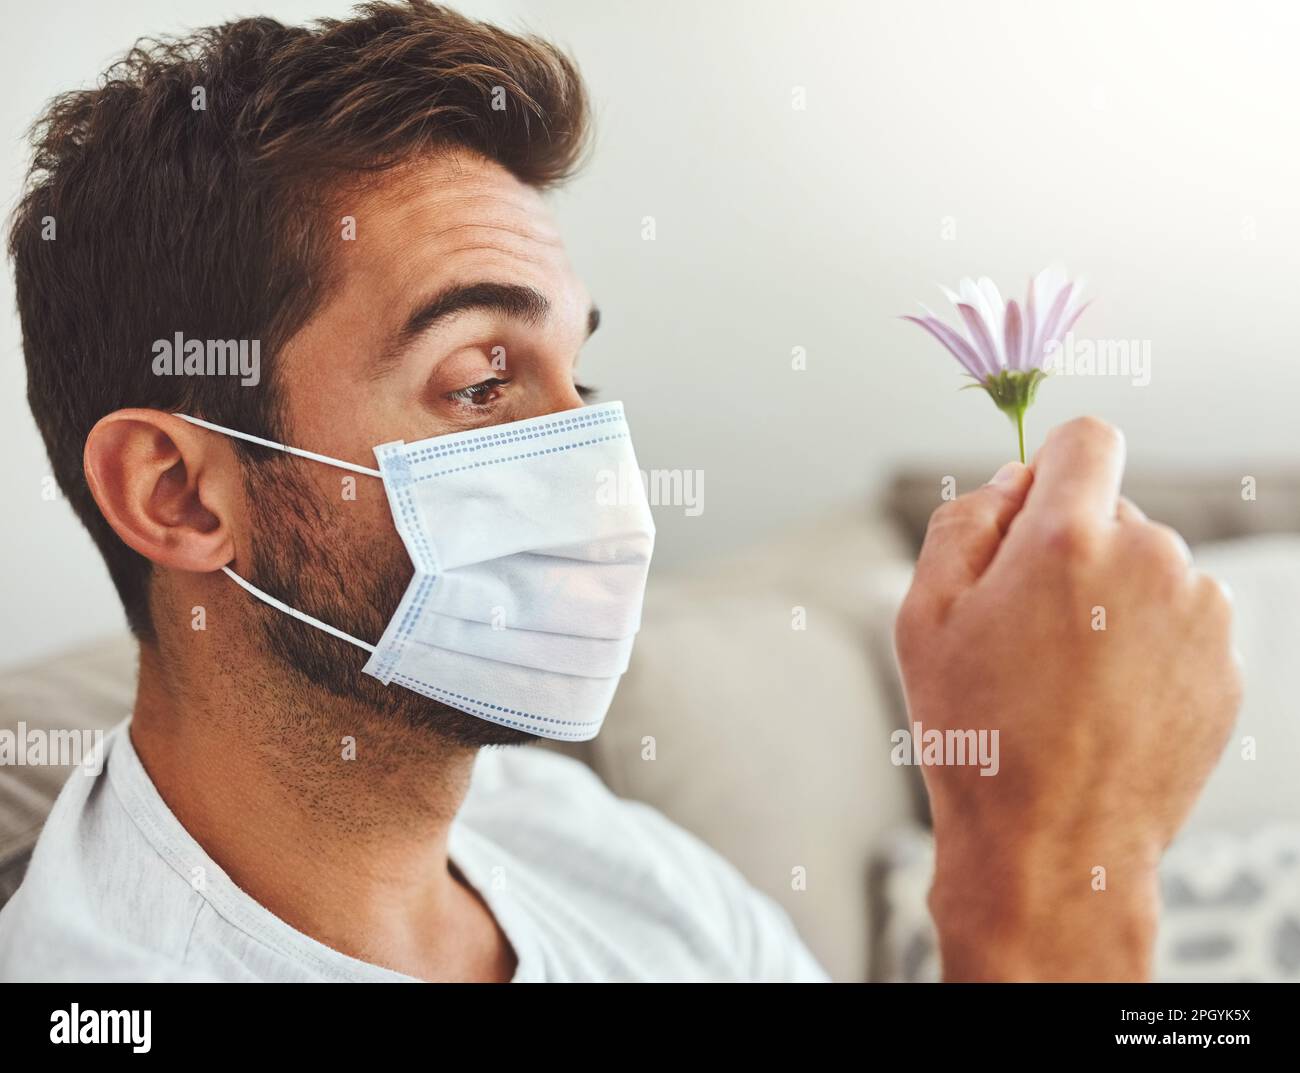 Kann ich überhaupt durch dieses Ding riechen? Ein attraktiver junger Mann, der eine Schutzmaske trägt, während er eine Blume hält. Stockfoto